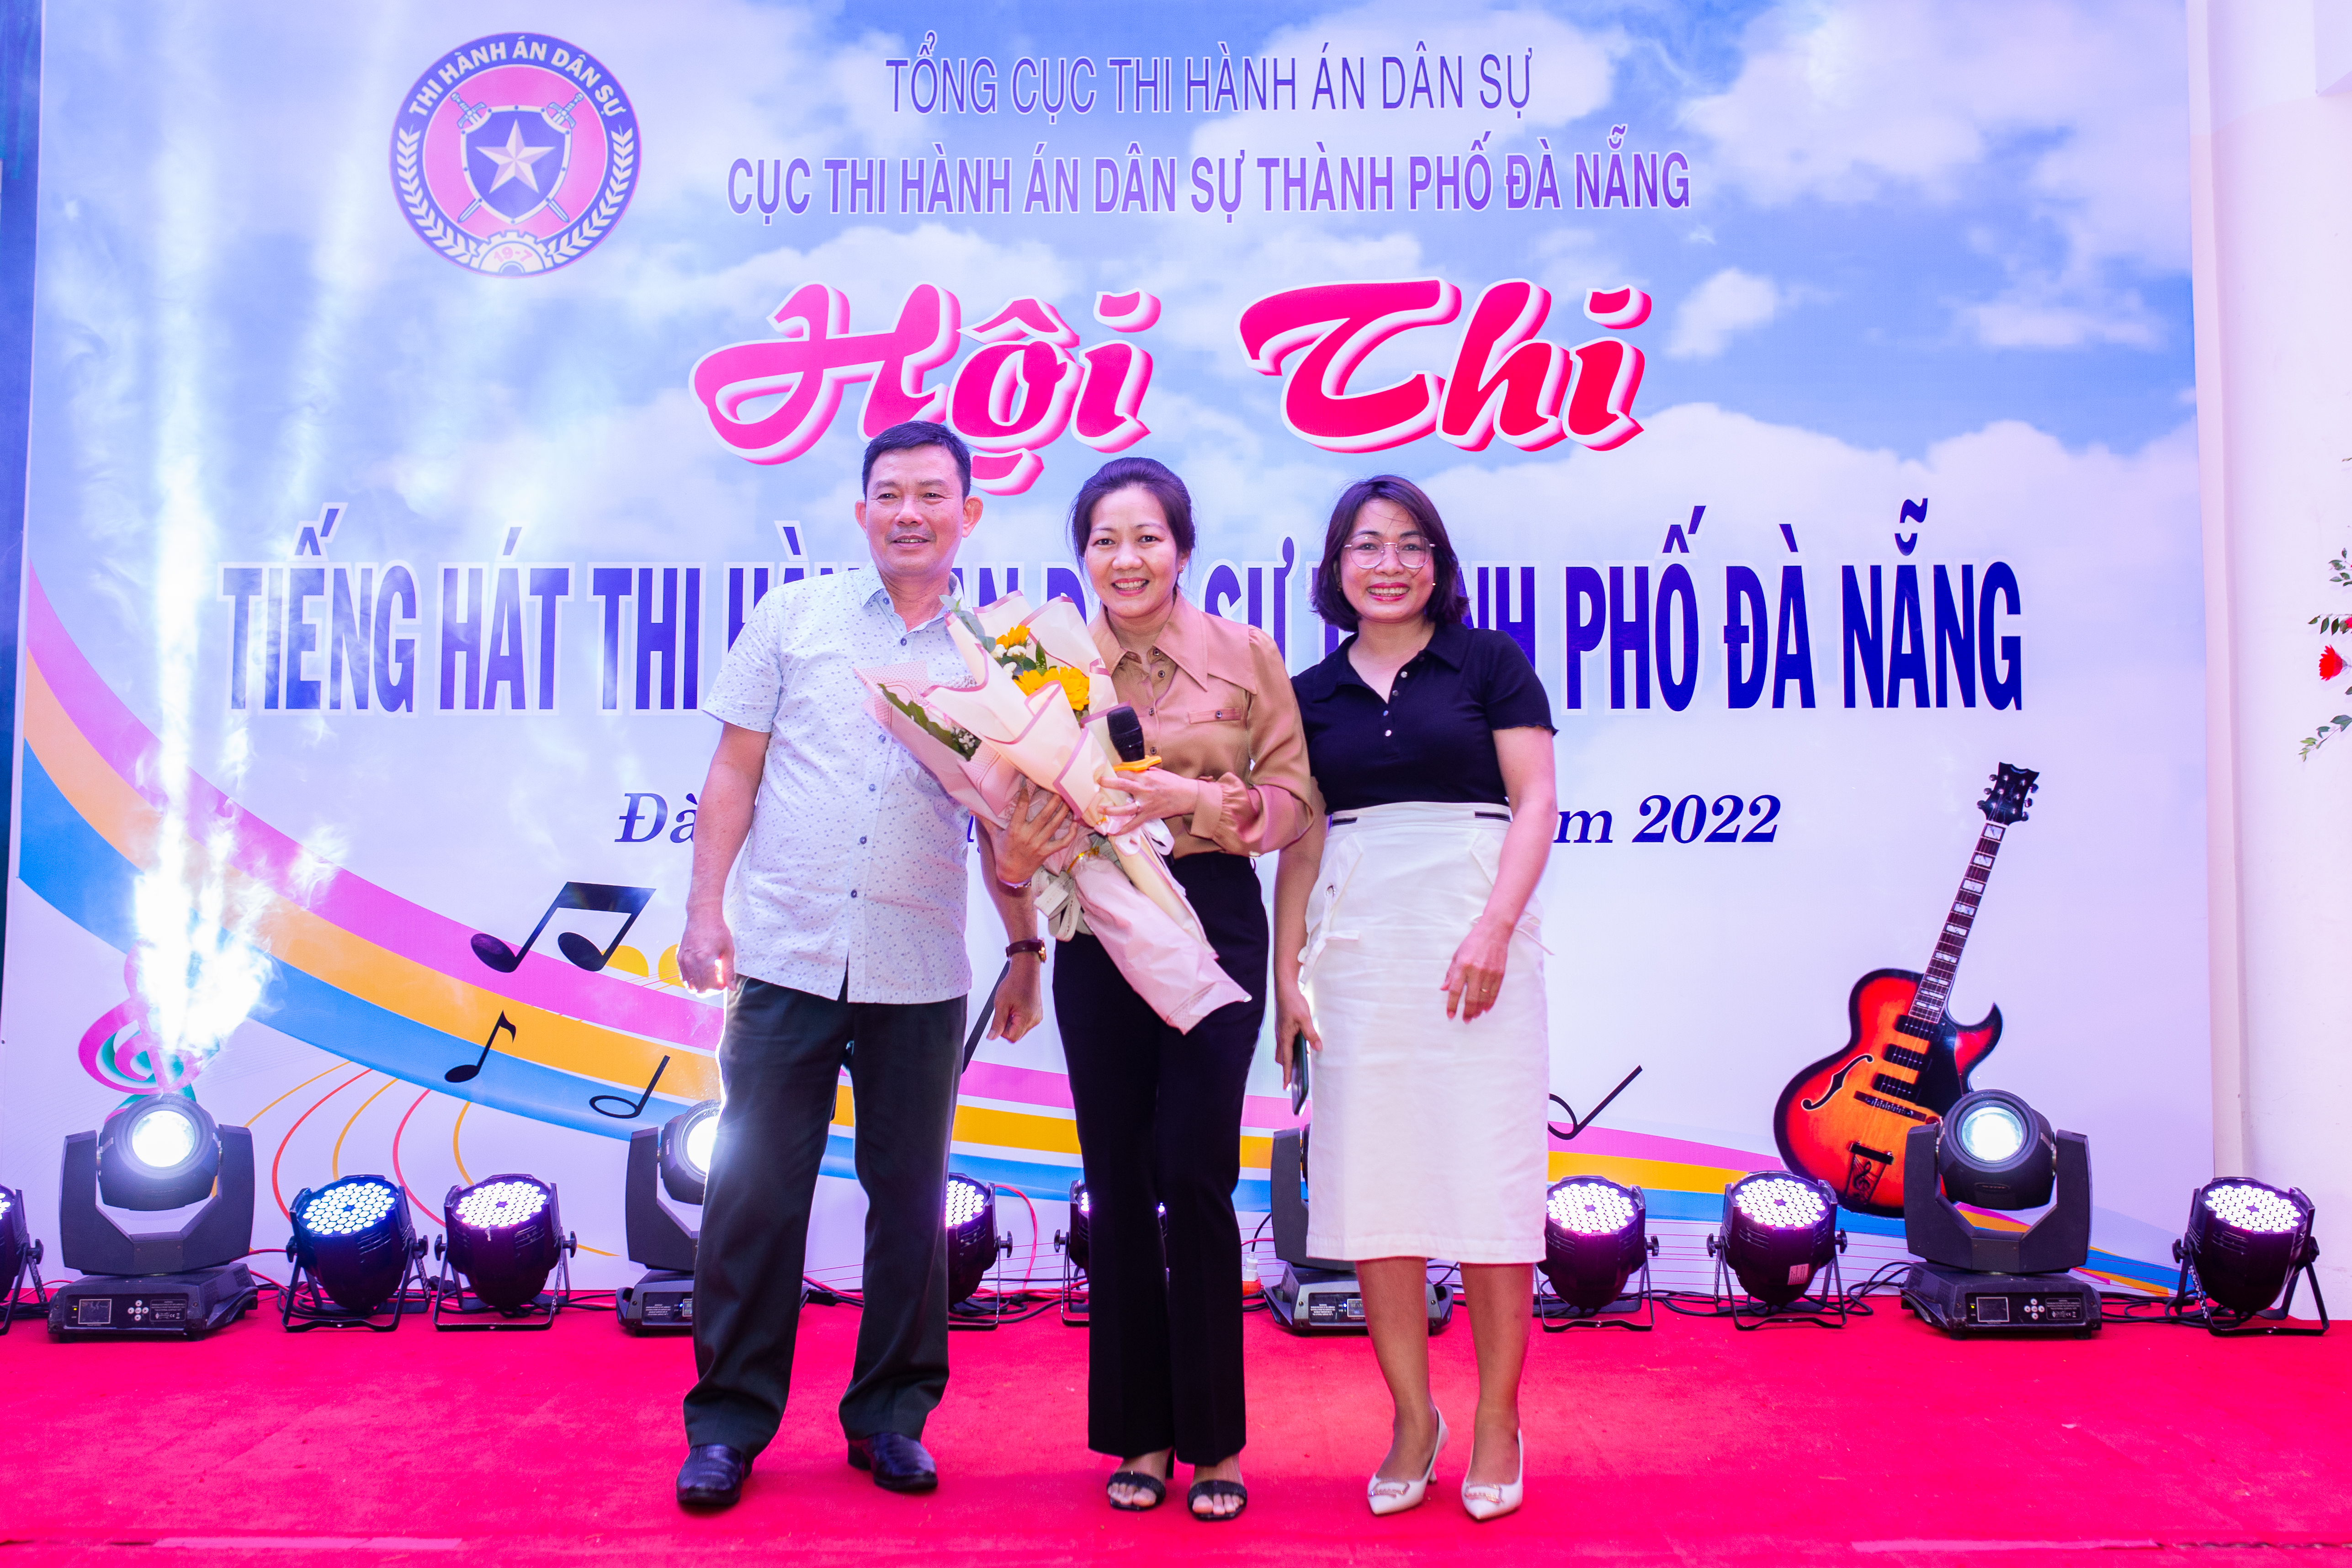 Hội Thi tiếng hát thi hành án dân sự thành phố Đà Nẵng 7